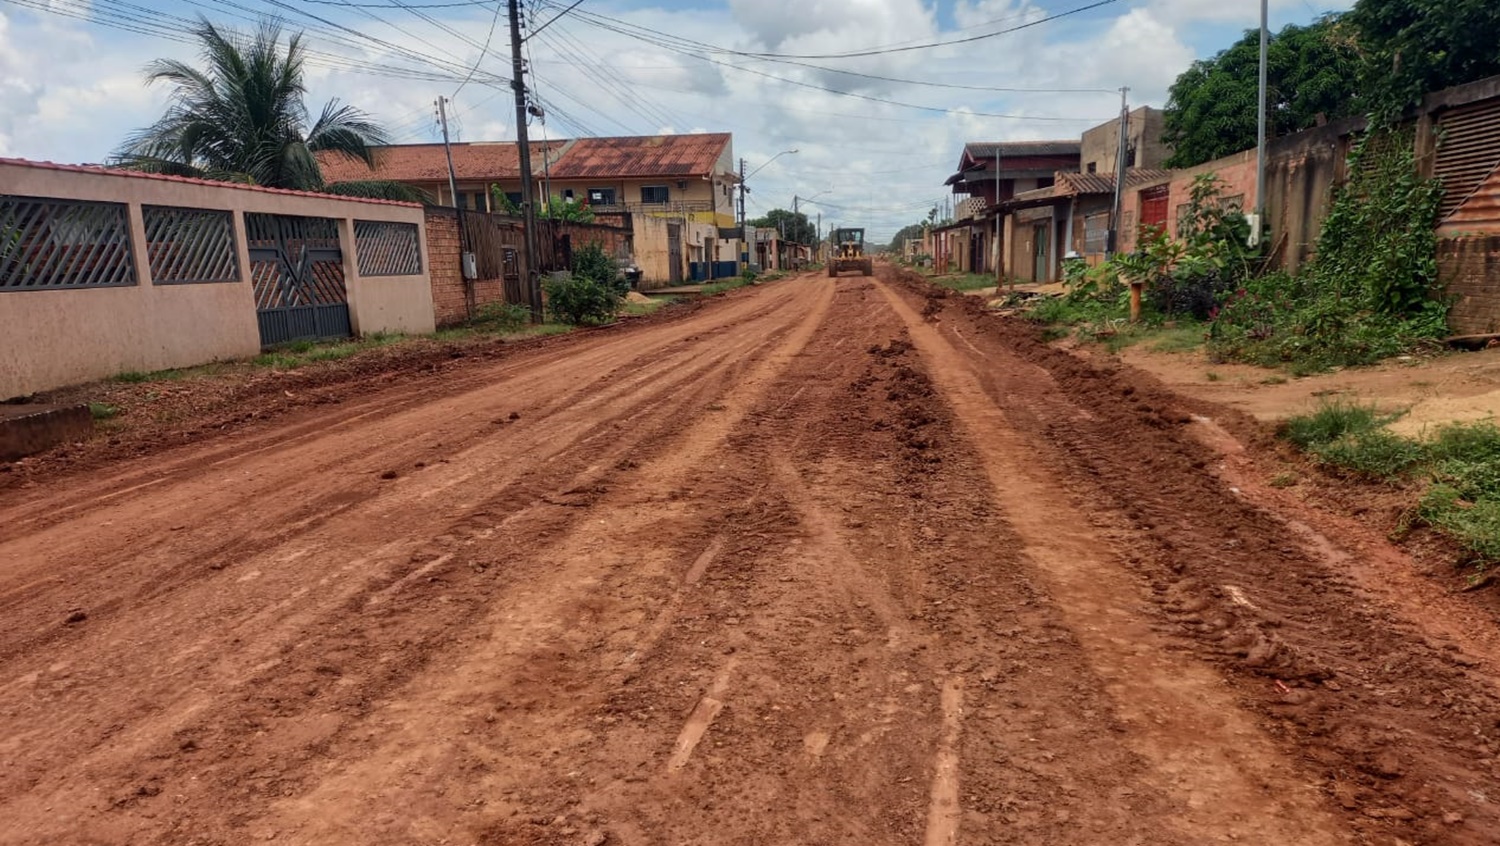 EDWILSON NEGREIROS: Prefeitura limpa e encascalha ruas no Três Marias após pedido de vereador